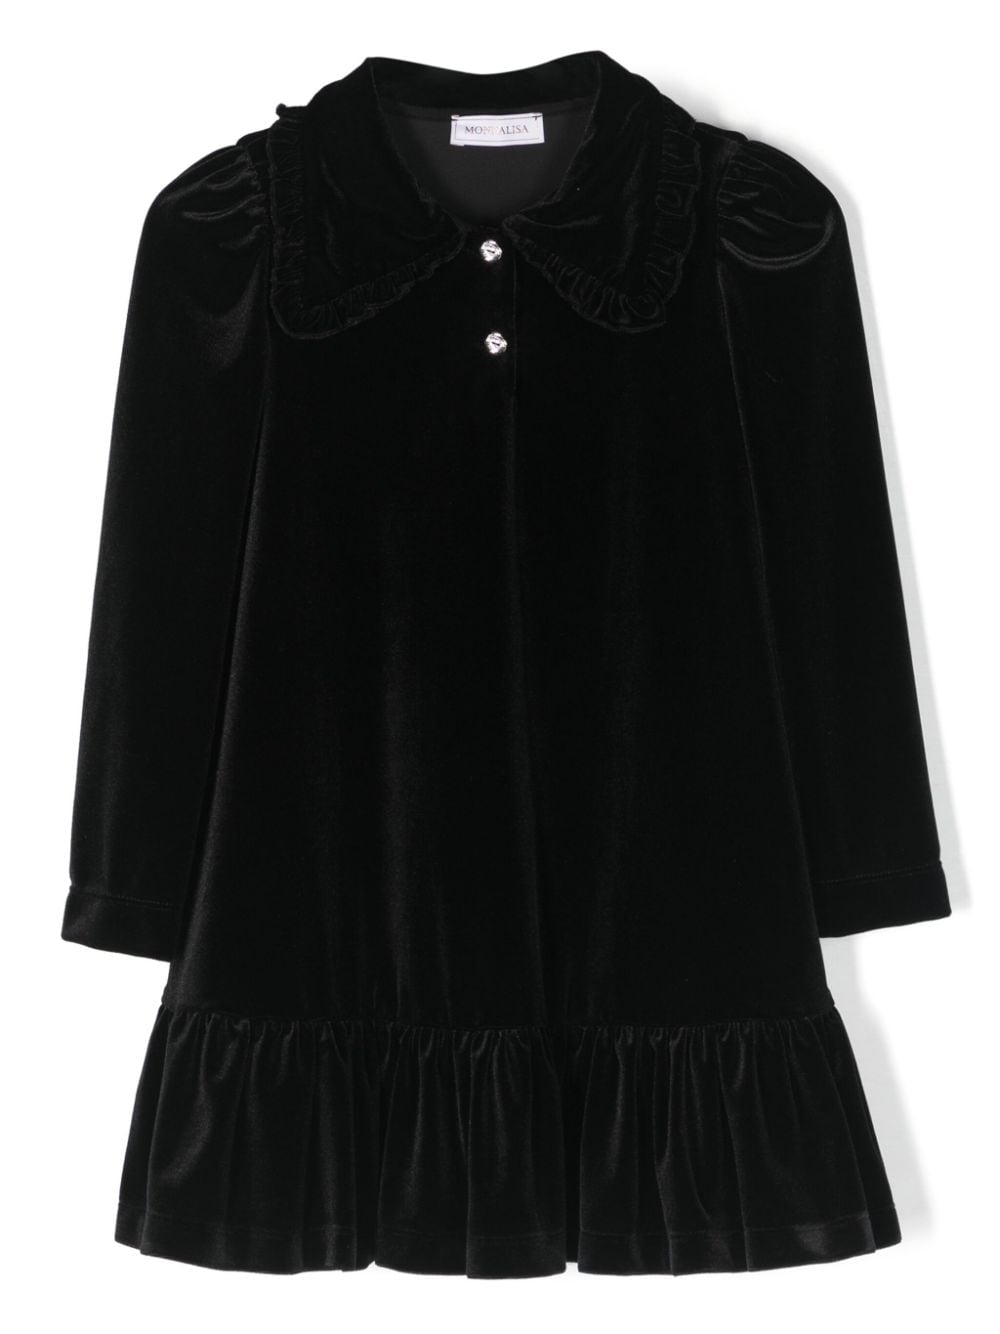 Monnalisa Kids' Velvet Dress In Black